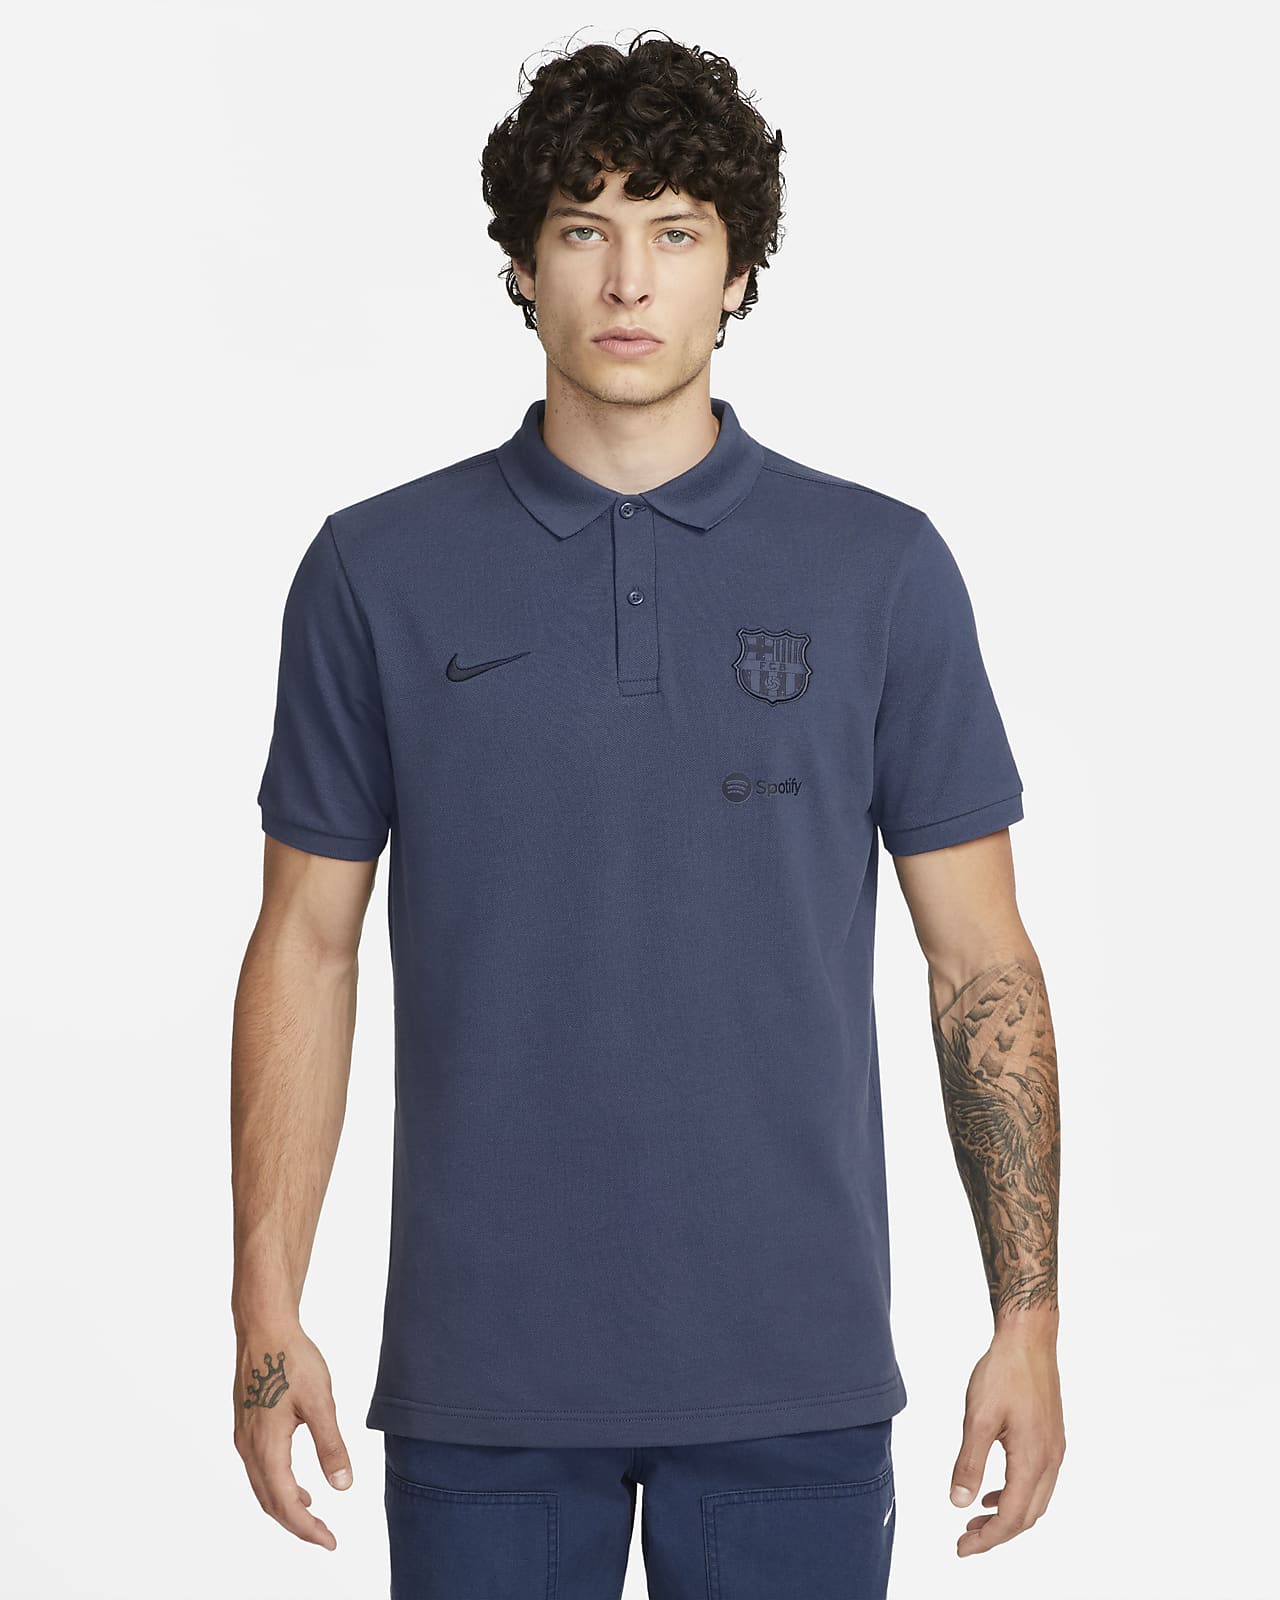 Ανδρική ποδοσφαιρική μπλούζα πόλο Nike εναλλακτικής εμφάνισης Μπαρτσελόνα